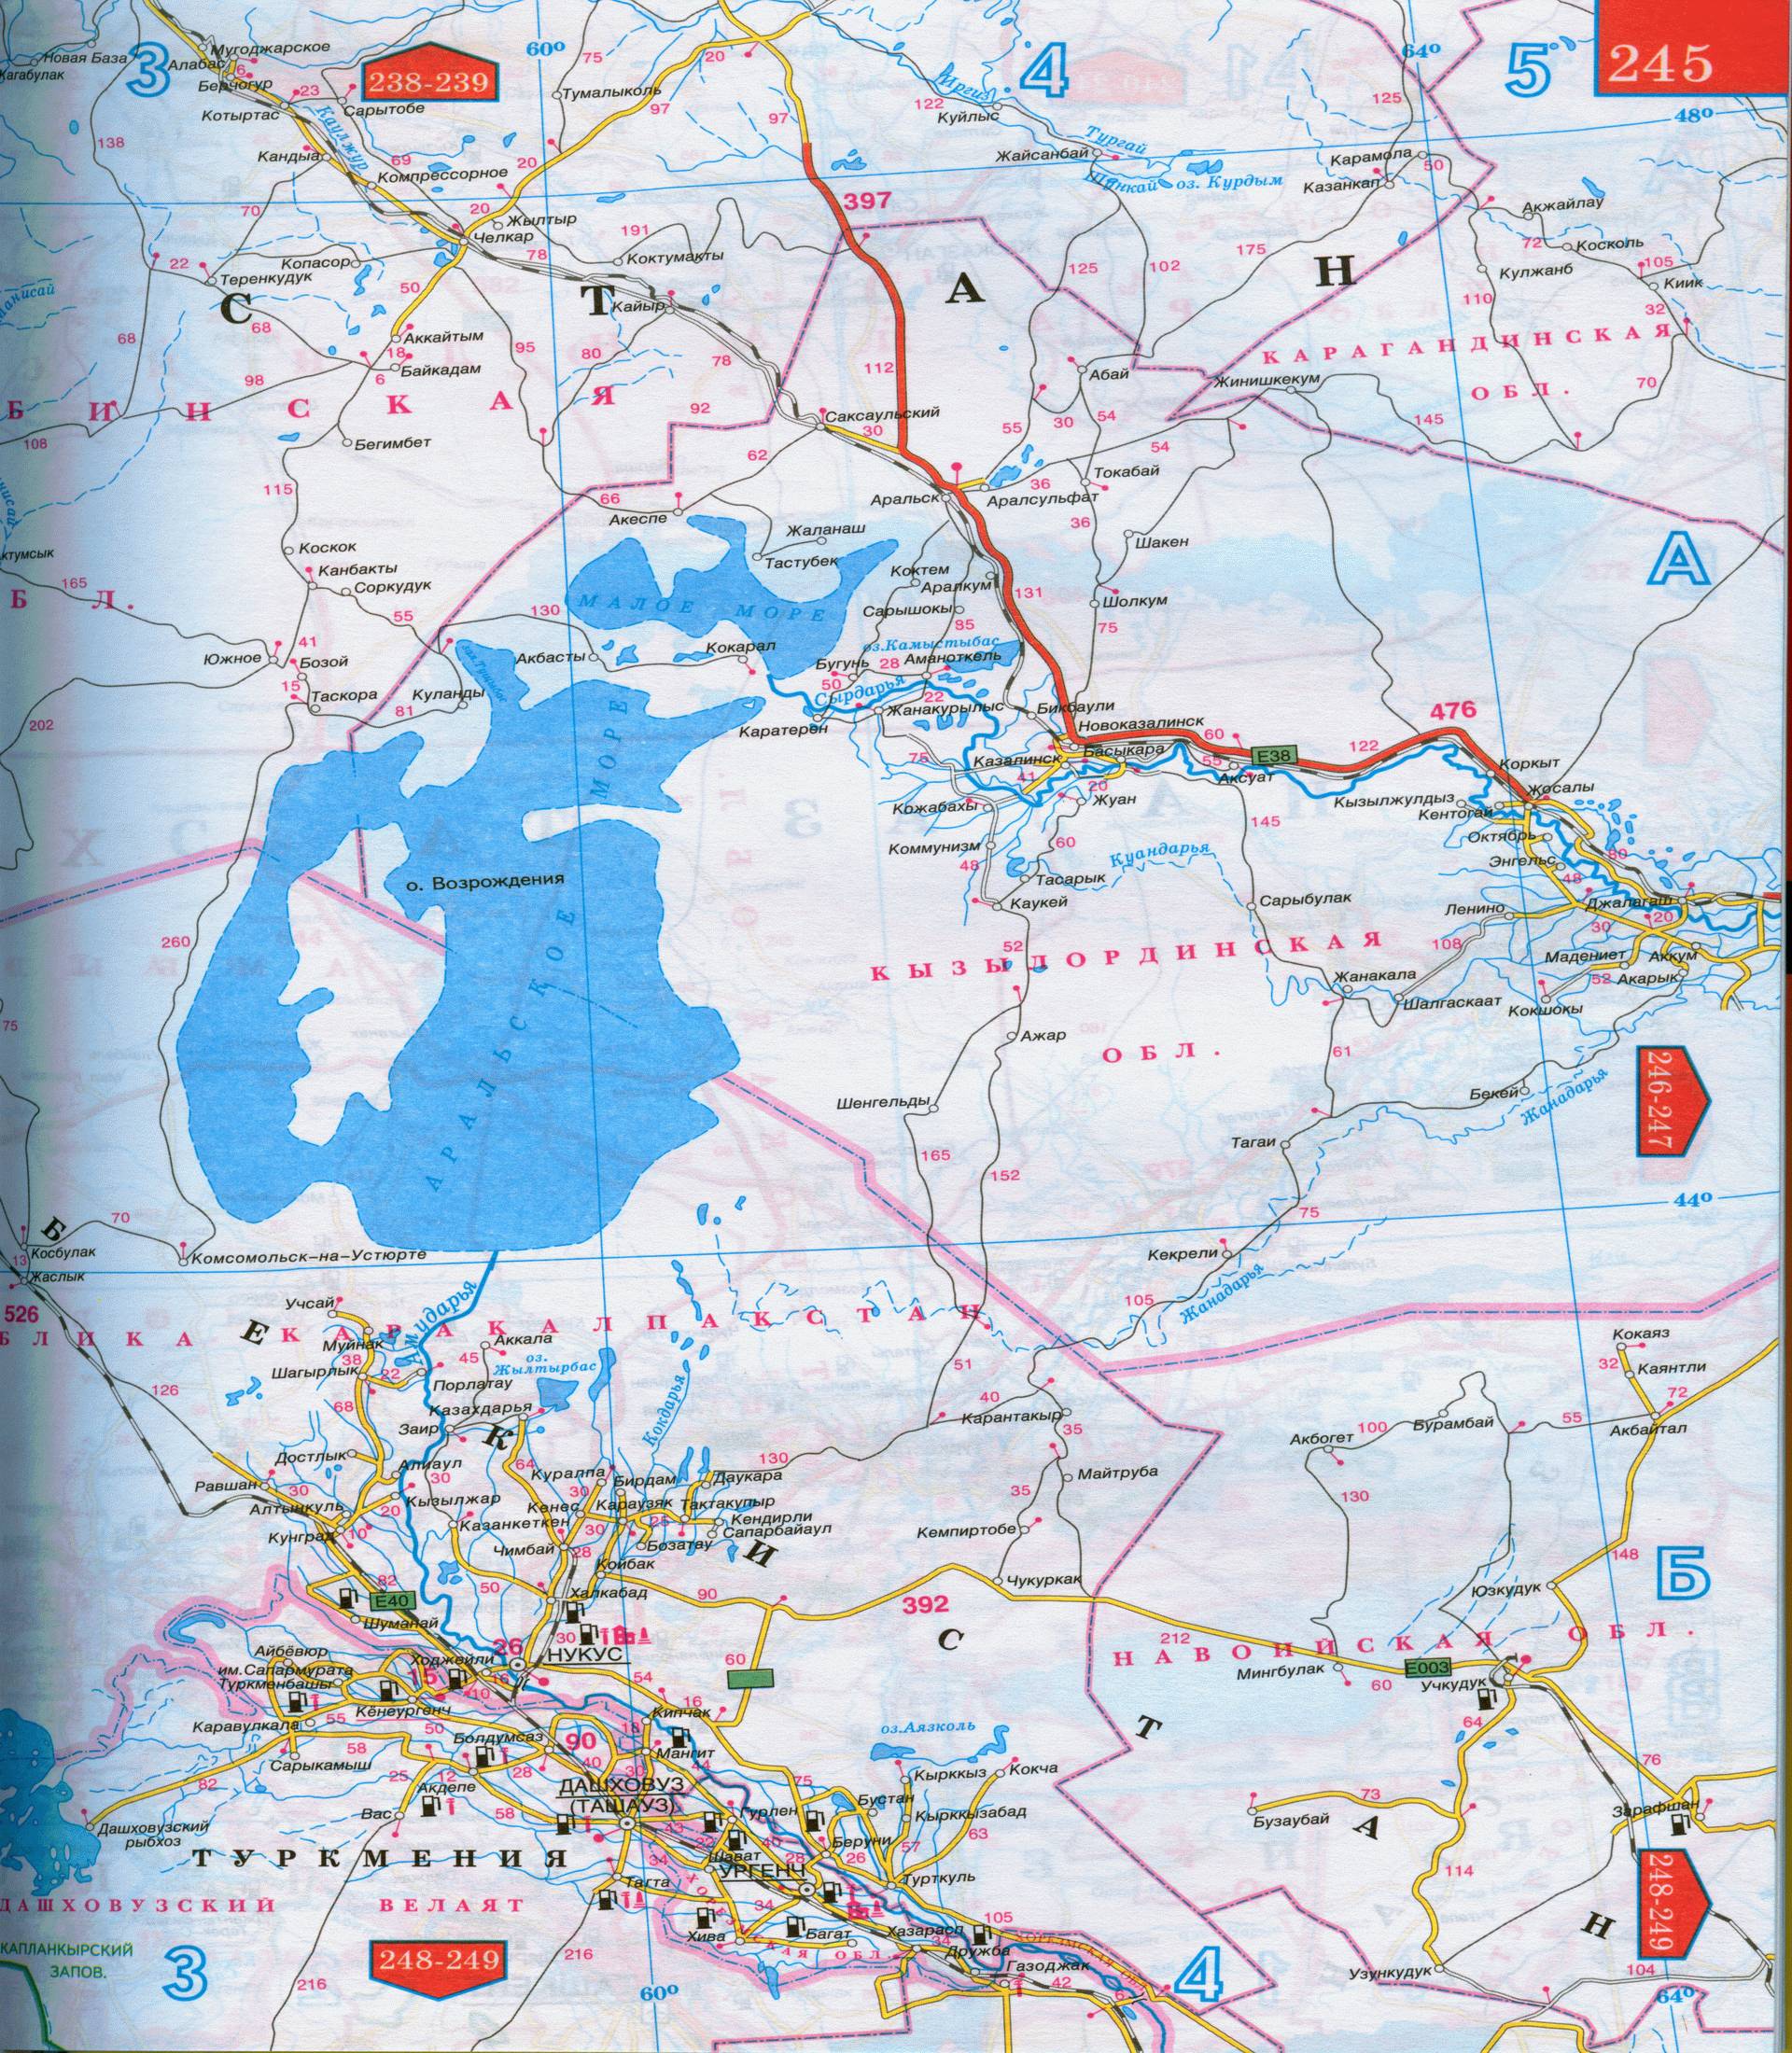 Карта Западного Казахстана - Уральск, Актюбинск, Гурьев, Аральск, Актау. Карта автомобильных дорог западного Казахстана, B1 - 